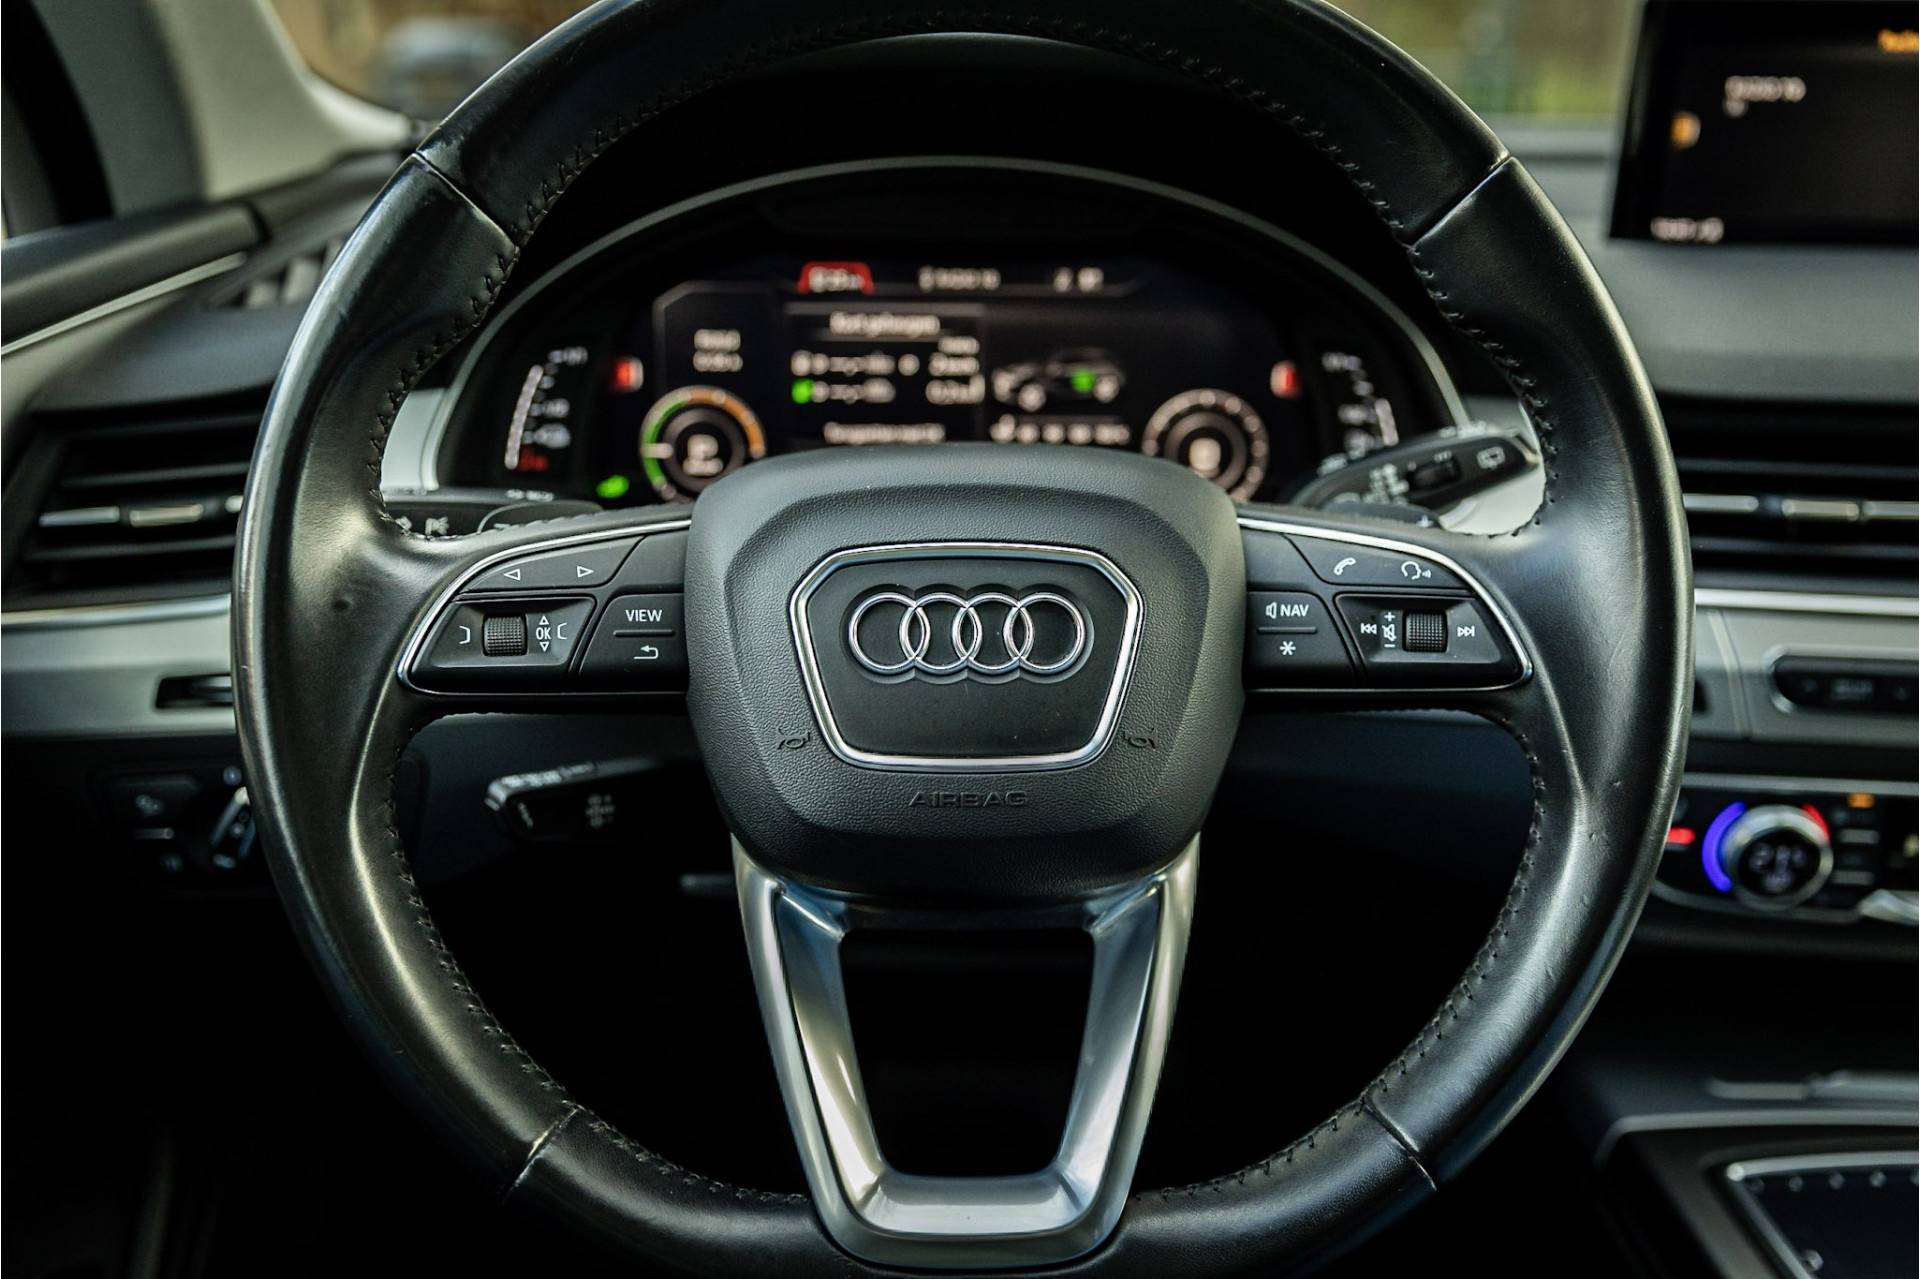 Audi Q7 3.0 TDI e-tron Quattro Panorama Luchtvering 50% Wegenbelasting - 9/29